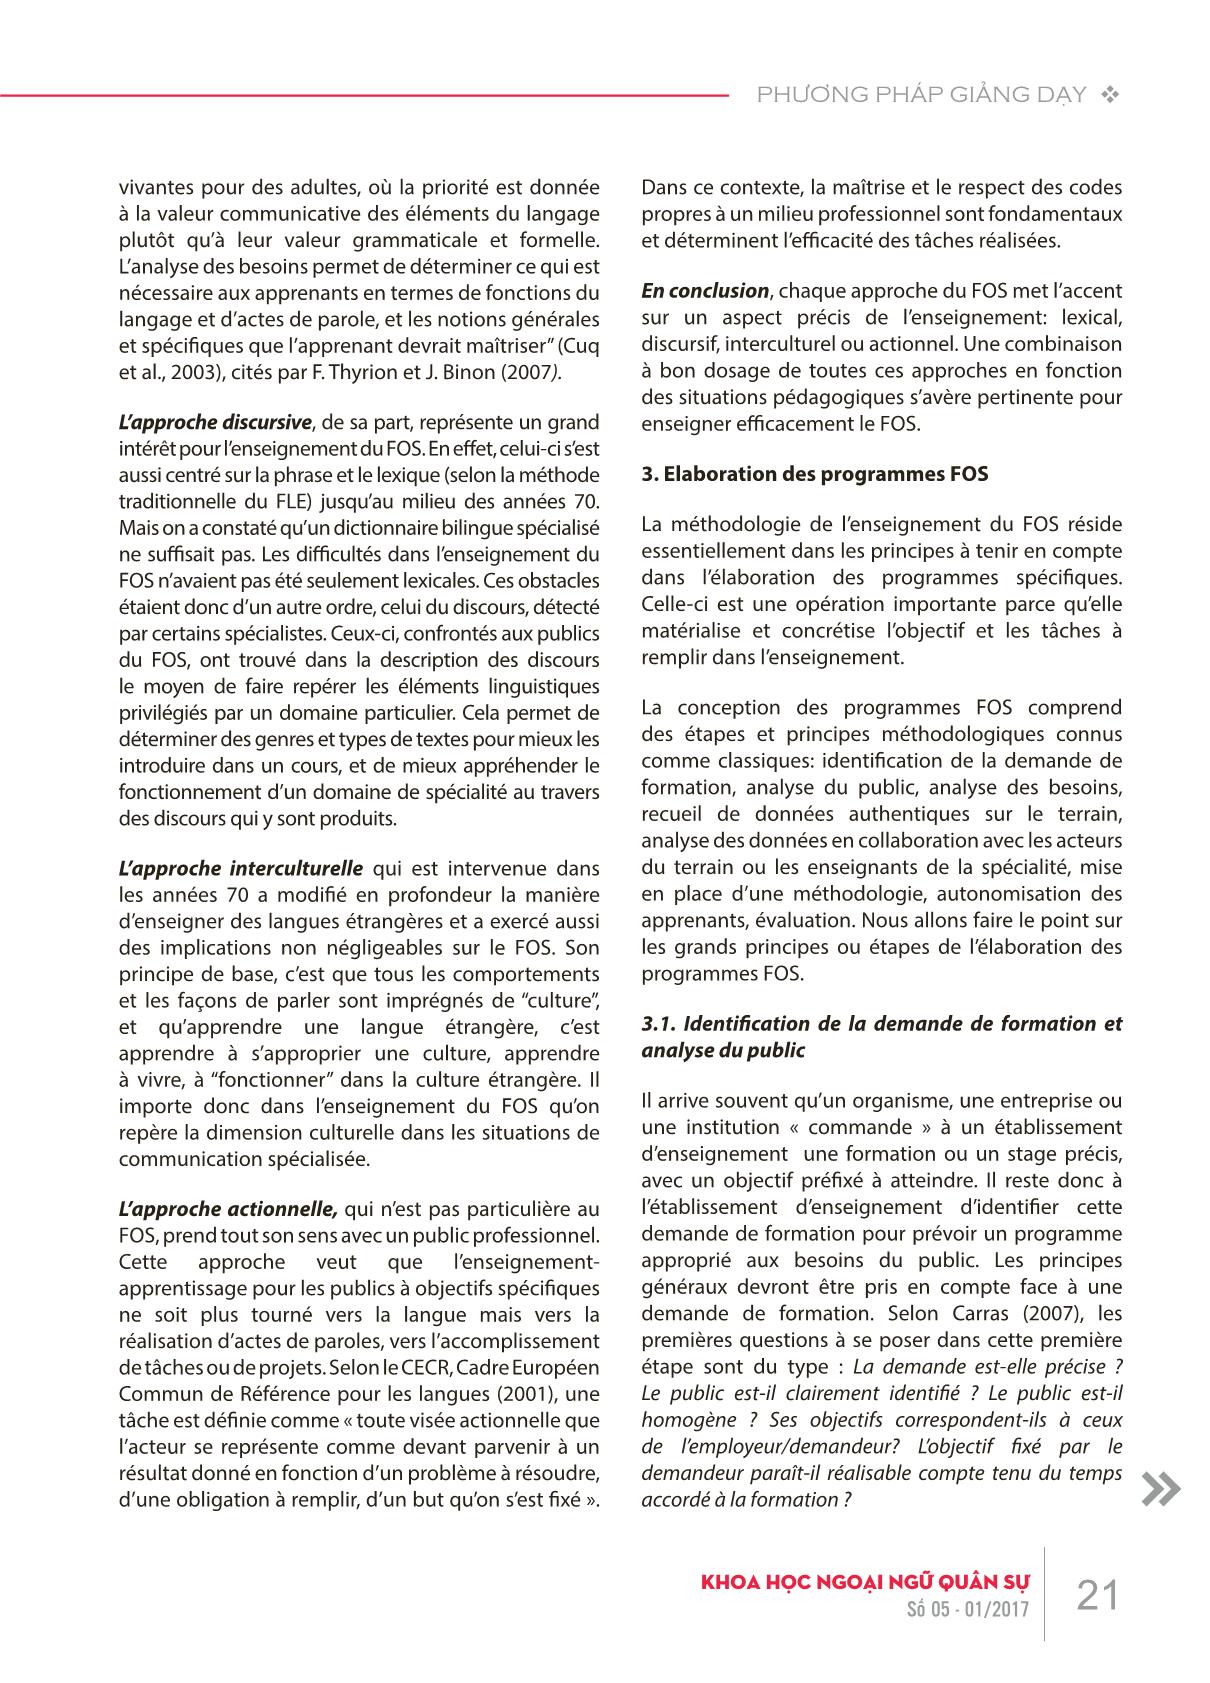 Phương pháp giảng dạy tiếng Pháp theo mục tiêu chuyên biệt trang 3